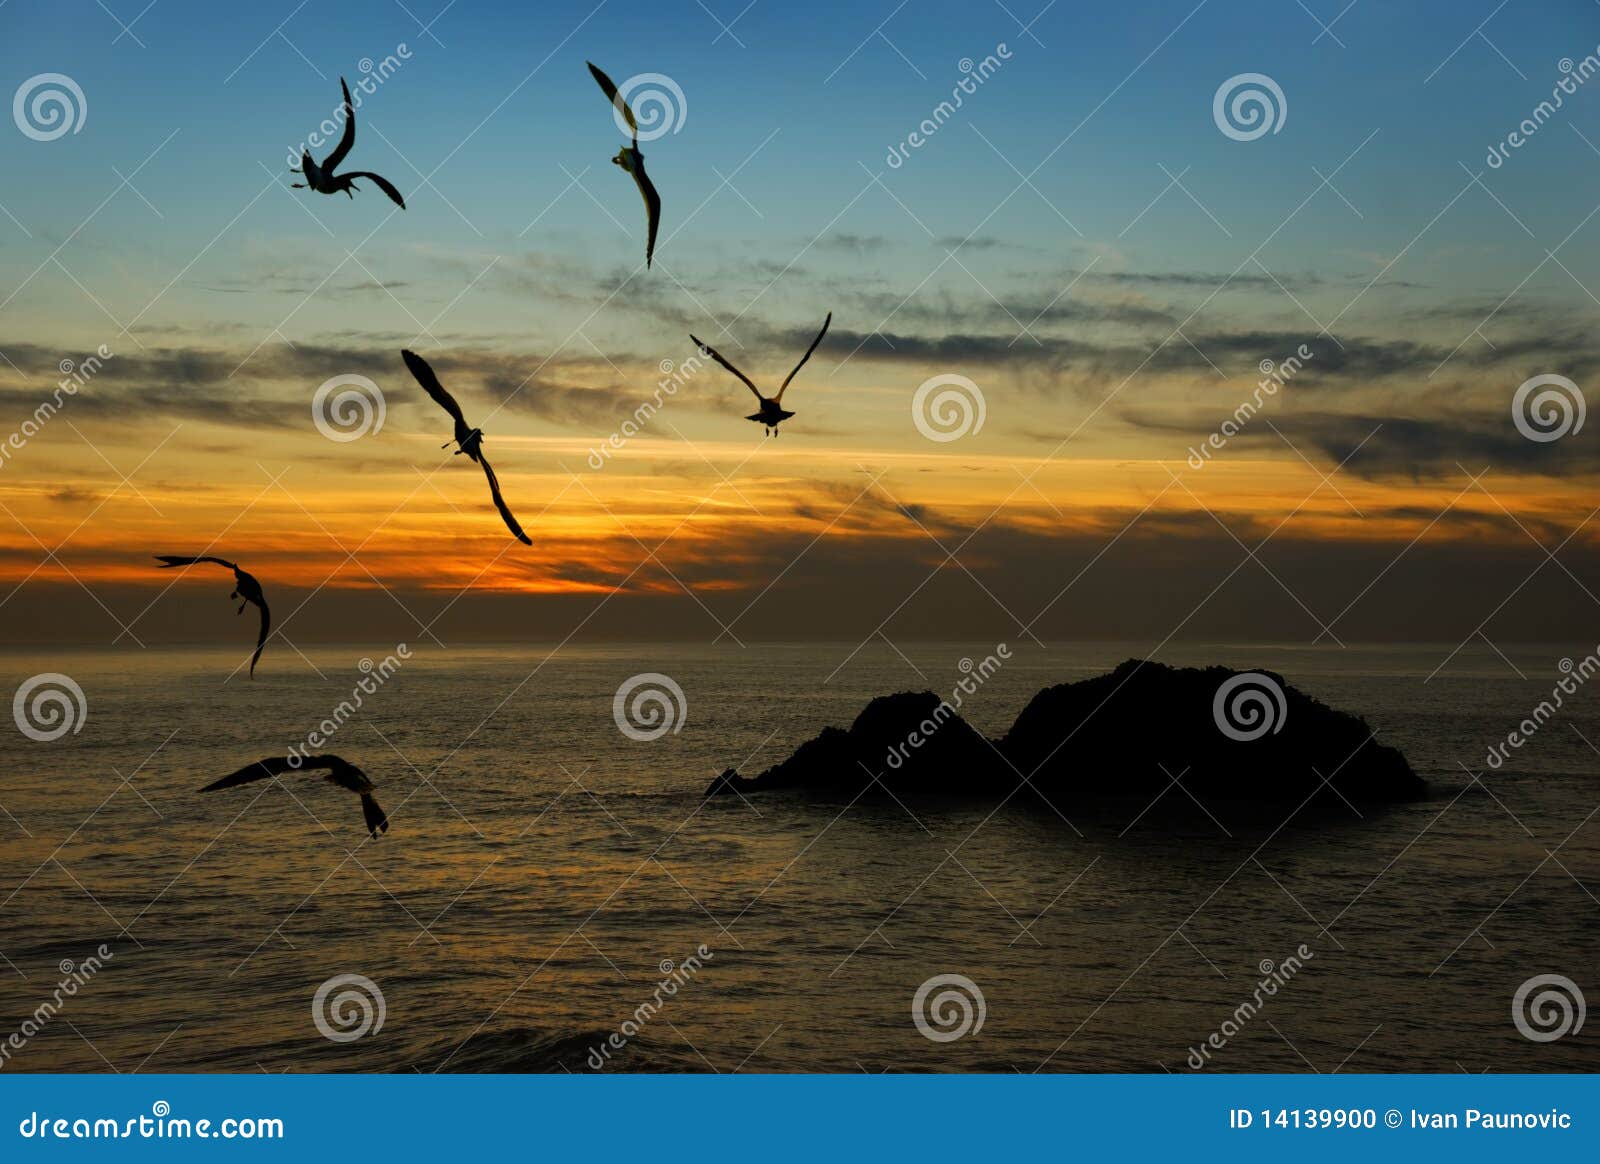 加利福尼亚在暮色和平的海鸥的海岸飞行.图片